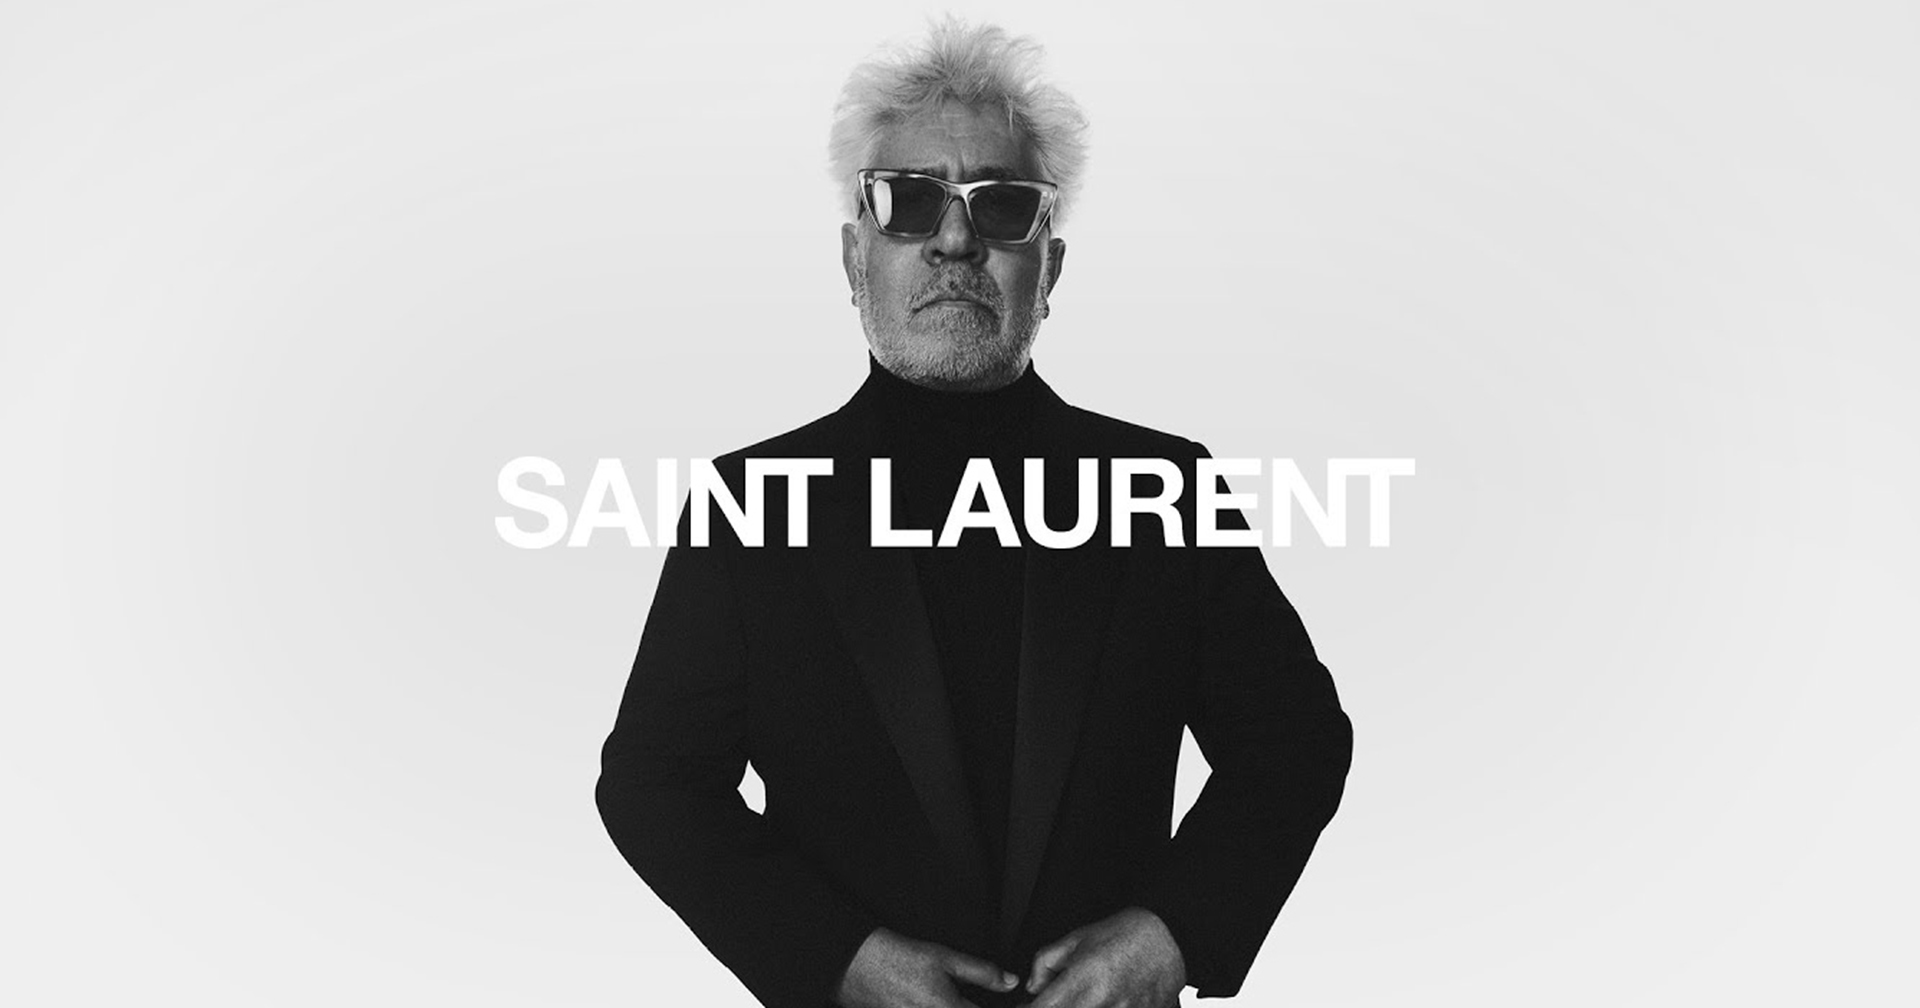 แบรนด์แฟชั่น Saint Laurent เปิดตัวค่ายหนังจริงจัง เตรียมร่วมงานผู้กำกับดัง จ่อผลิต 2-3 เรื่องต่อปี